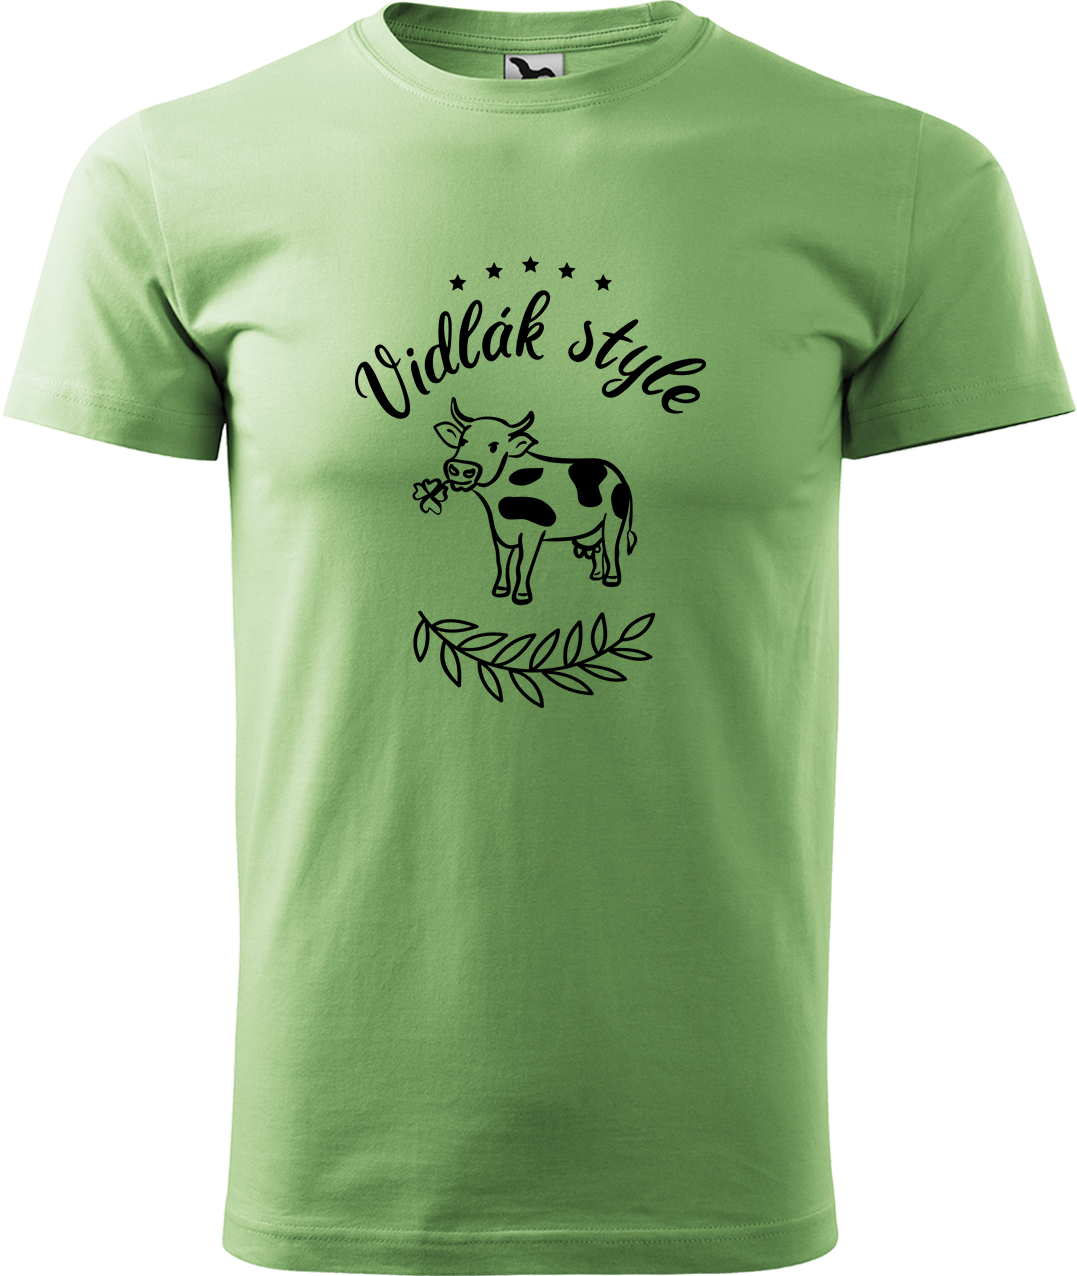 Pánské tričko s krávou - Vidlák style Velikost: M, Barva: Trávově zelená (39), Střih: pánský